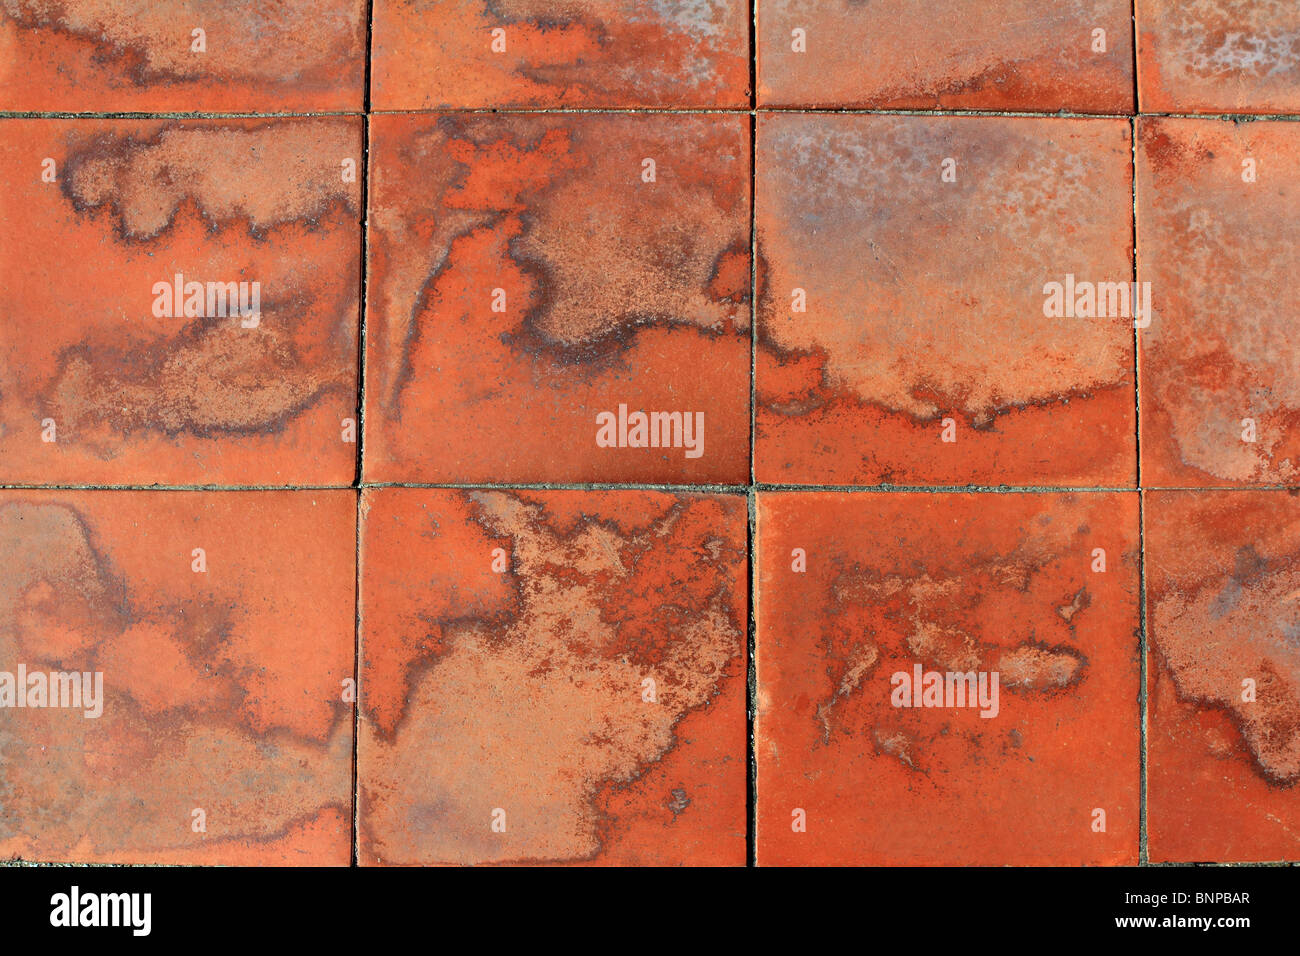 Place rouge de l'argile du sol carrelage texture de fond mediterraenan Espagne Banque D'Images